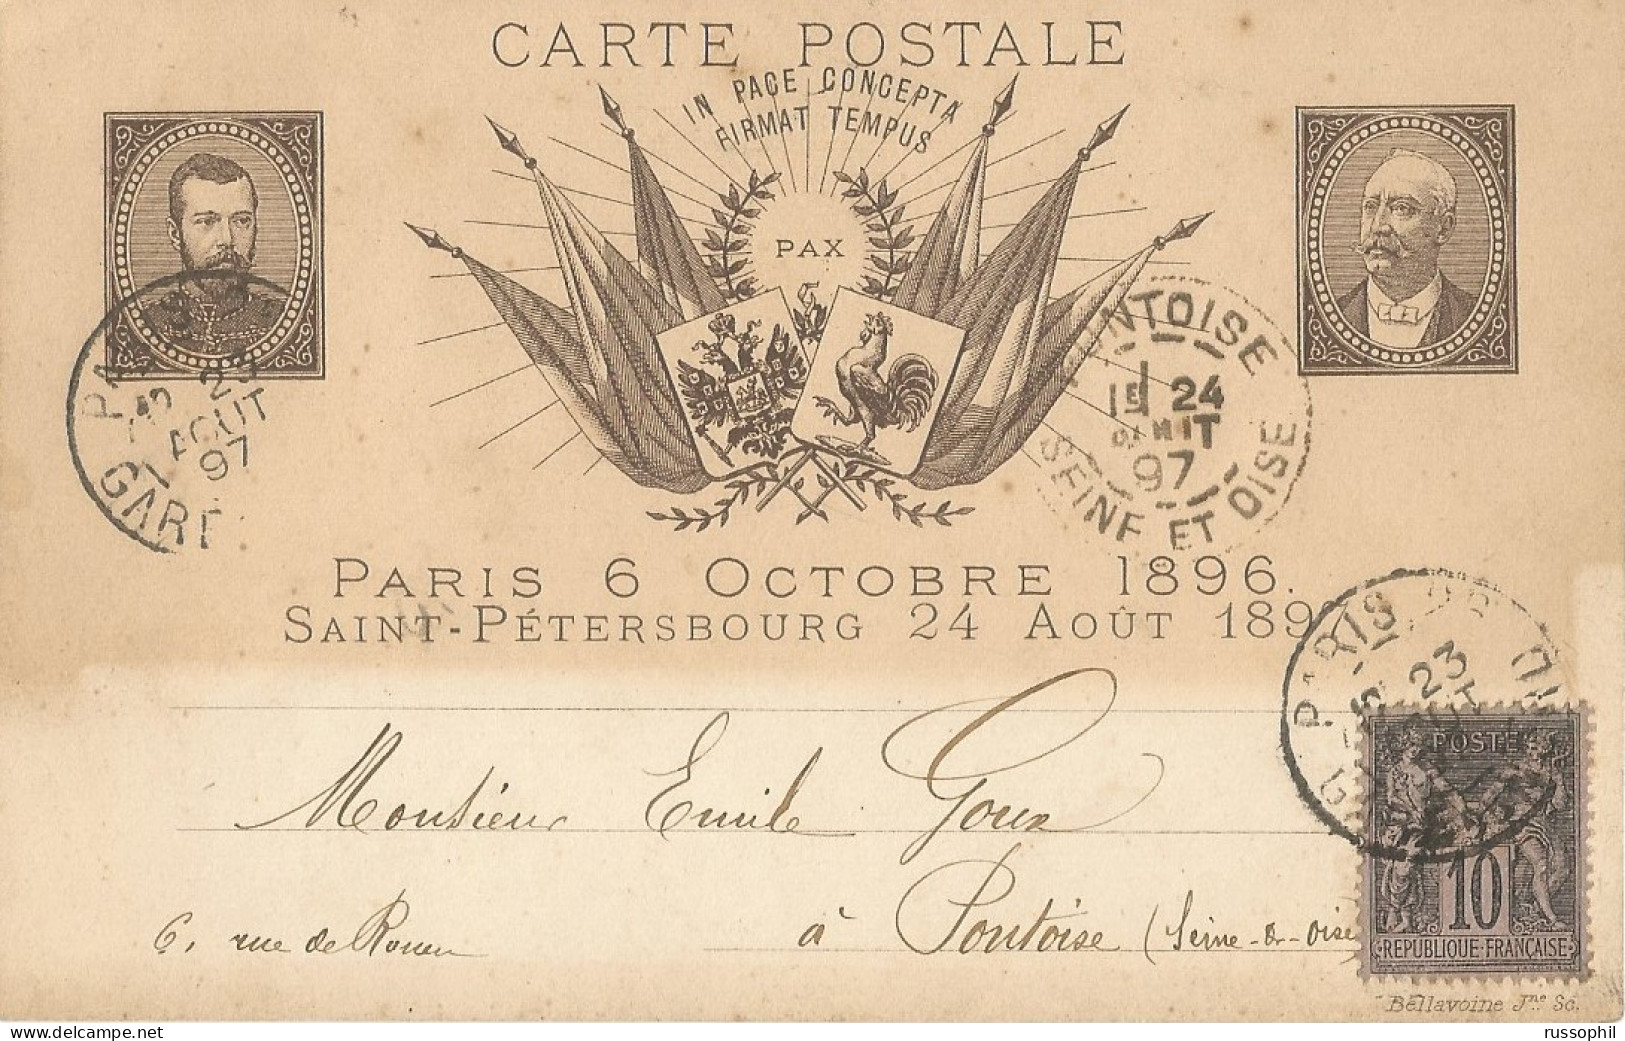 FRANCO RUSSIAN ALLIANCE - PARIS 6 OCTOBRE 1896 SAINT PETERSBOURG 24 AOUT 1897 - ED BELLAVOINE - 1897 - Evenementen